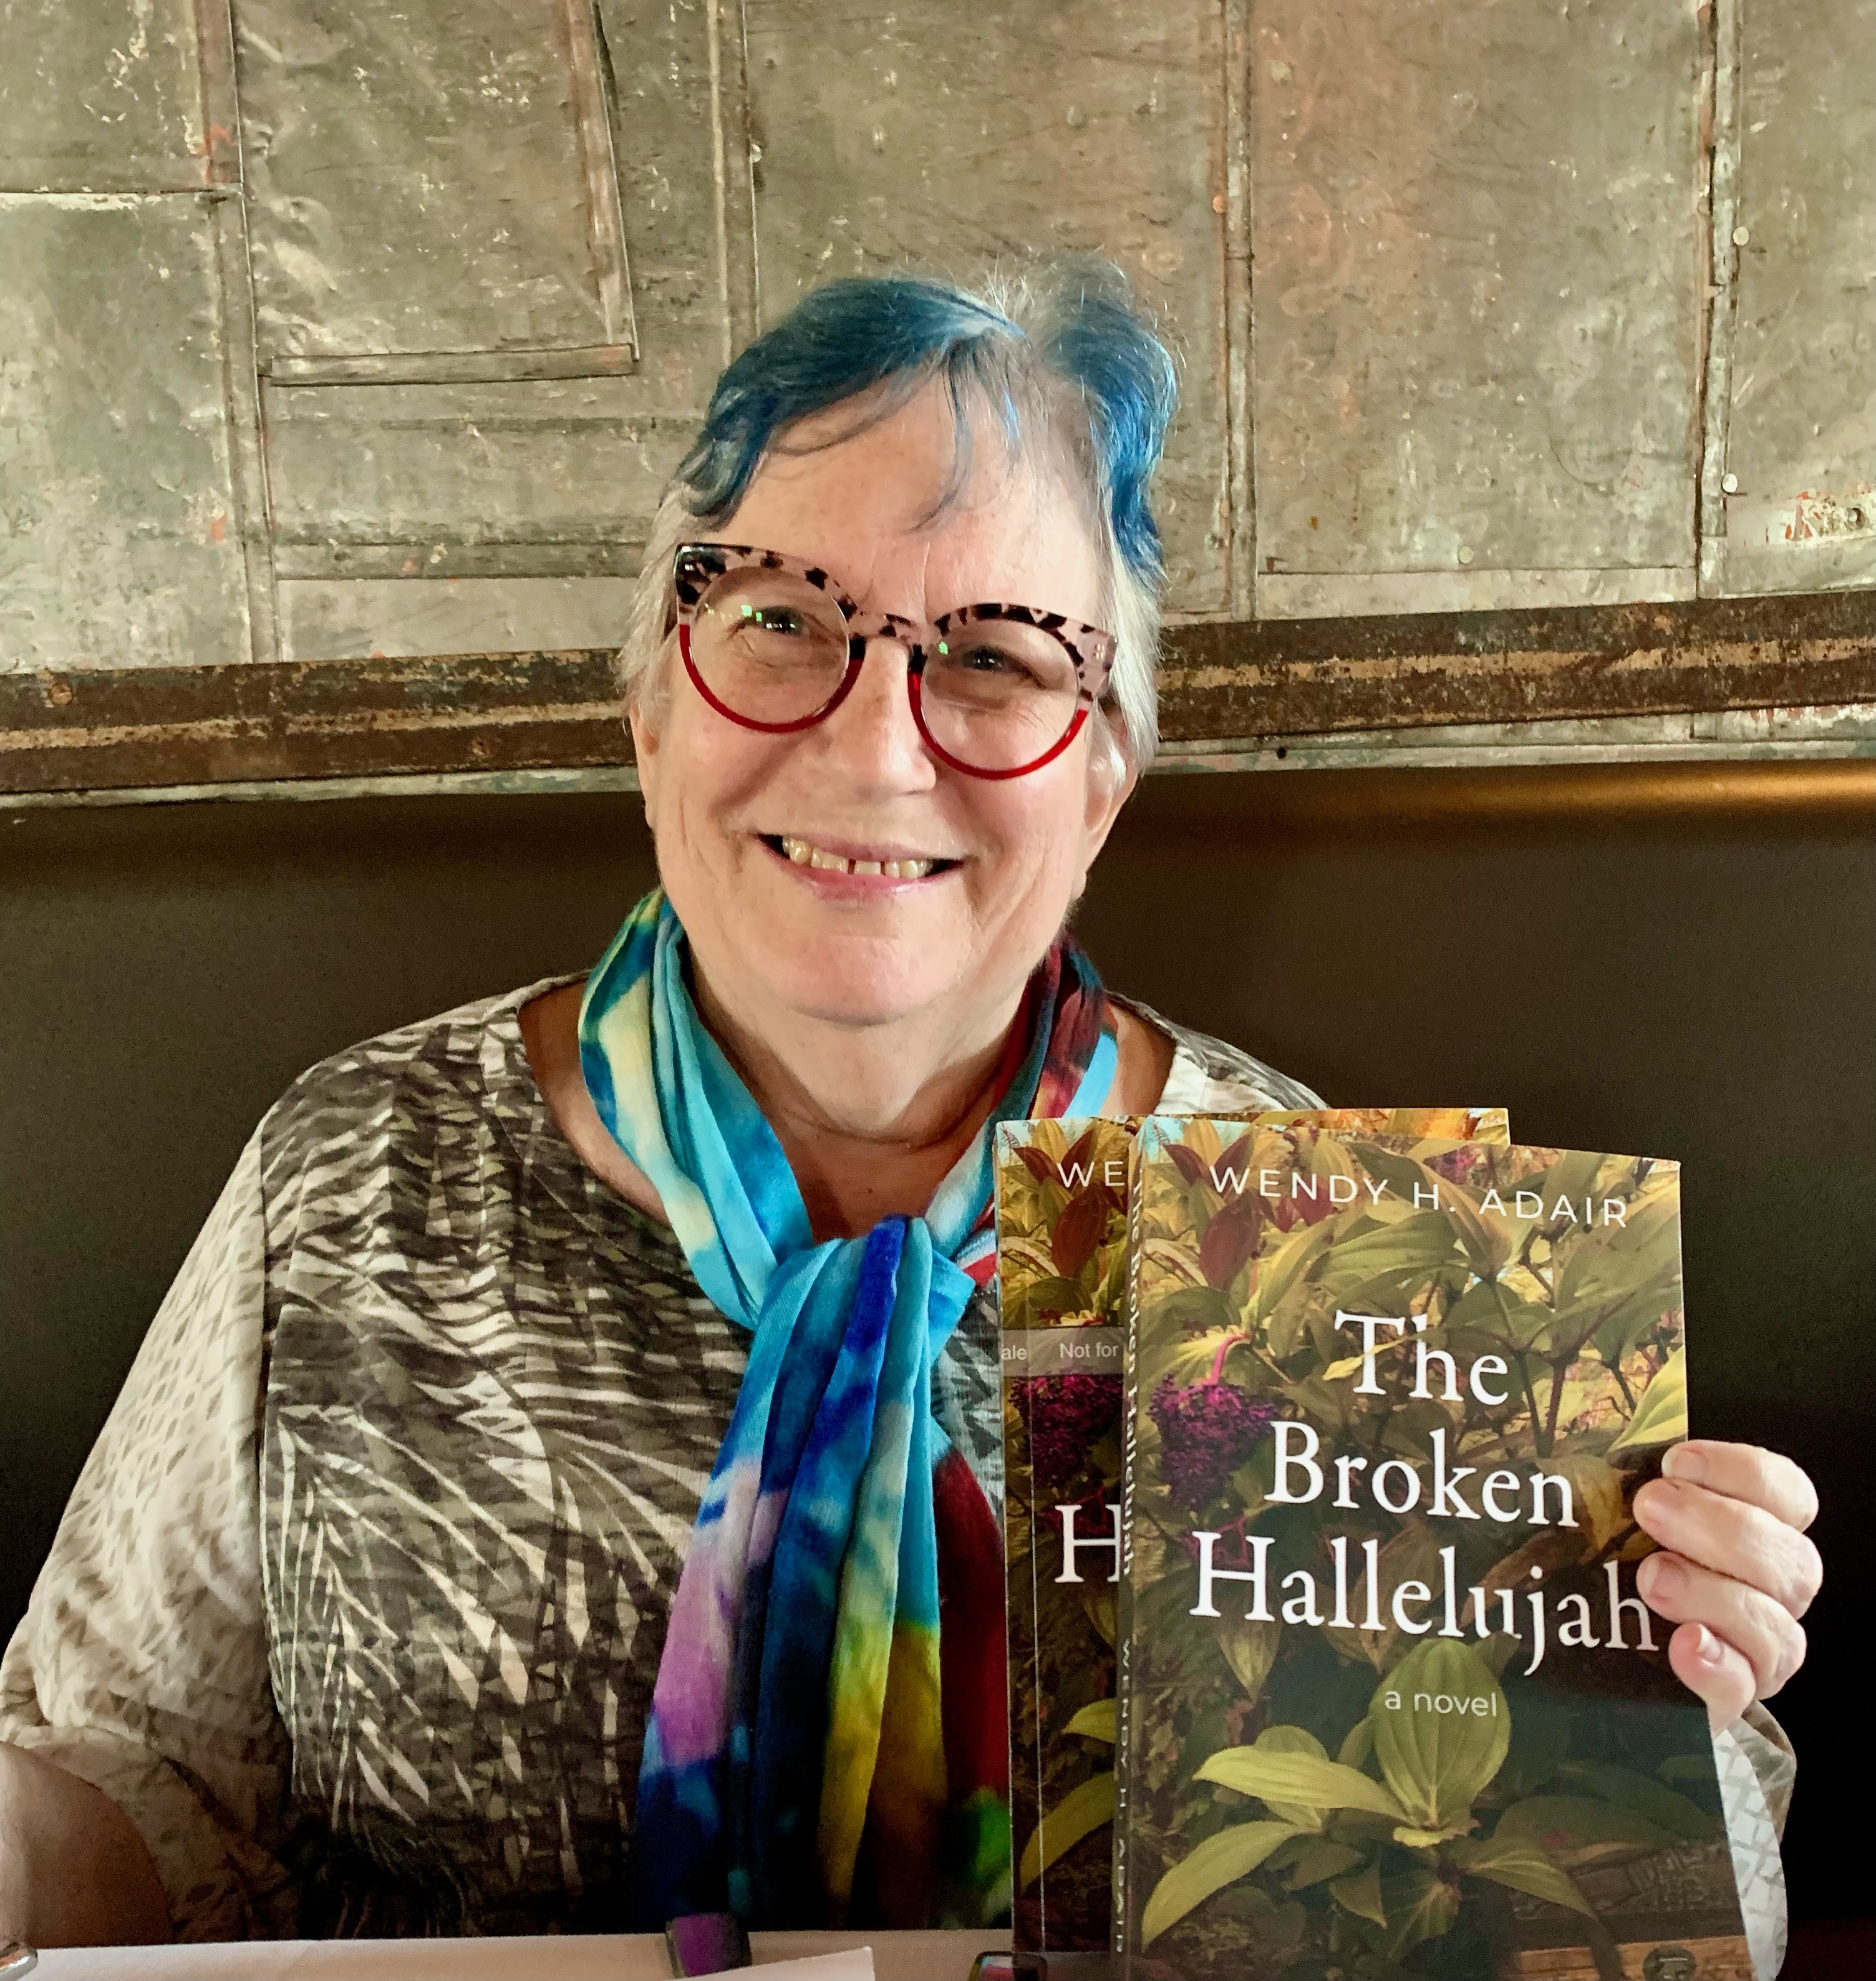 Wendy Adair and her award-winning novel, The Broken Hallelujah